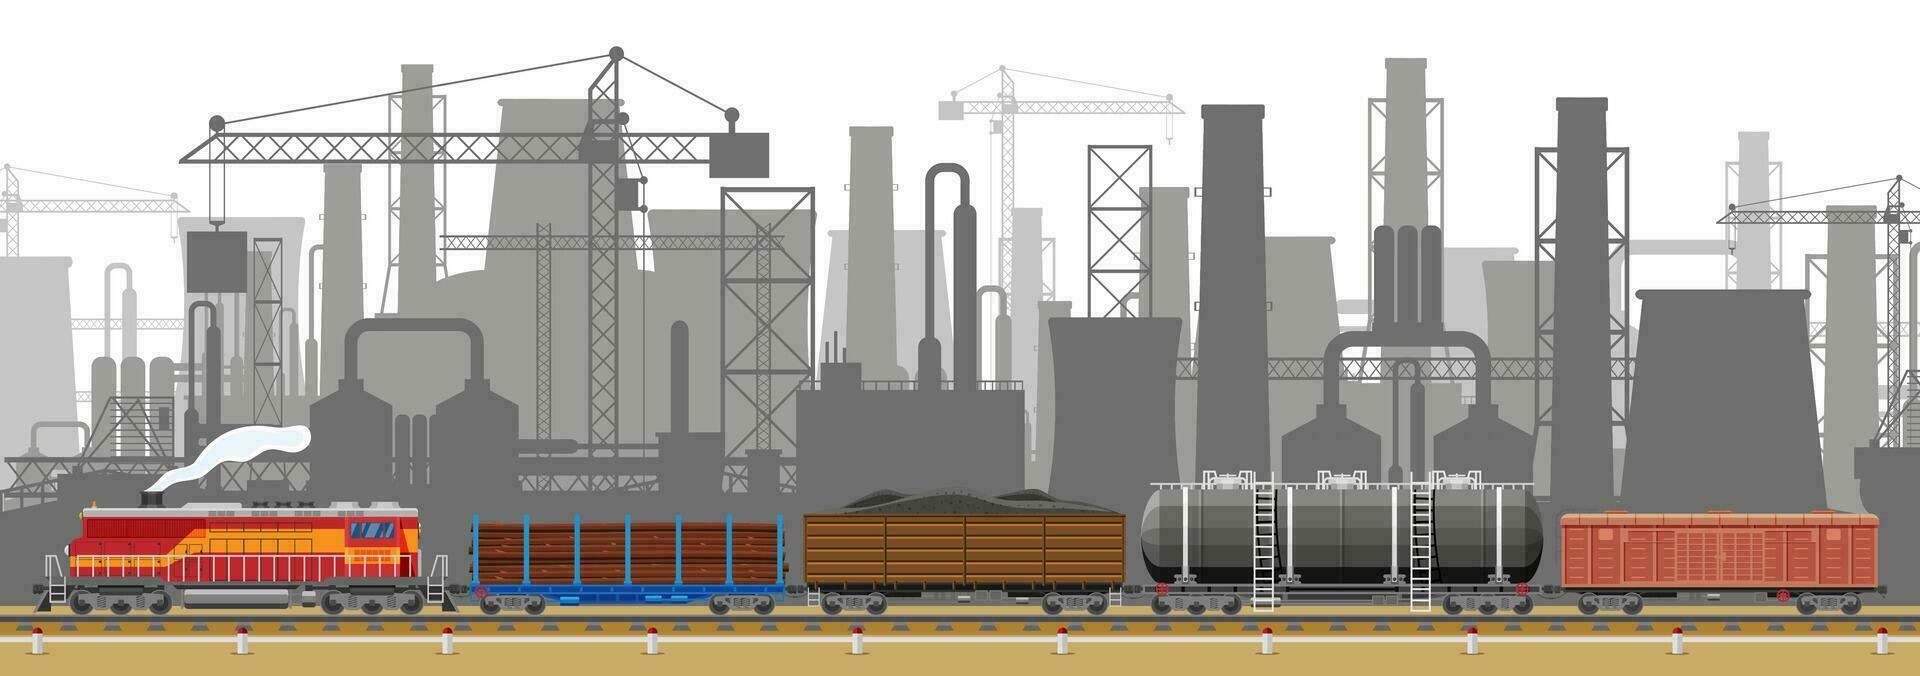 industriell landskap av frakt järnväg transport med växt och fuming rör. fabrik byggnad. rör, byggnader, lager, frakt järnväg station. stadsbild urban horisont. platt vektor illustration